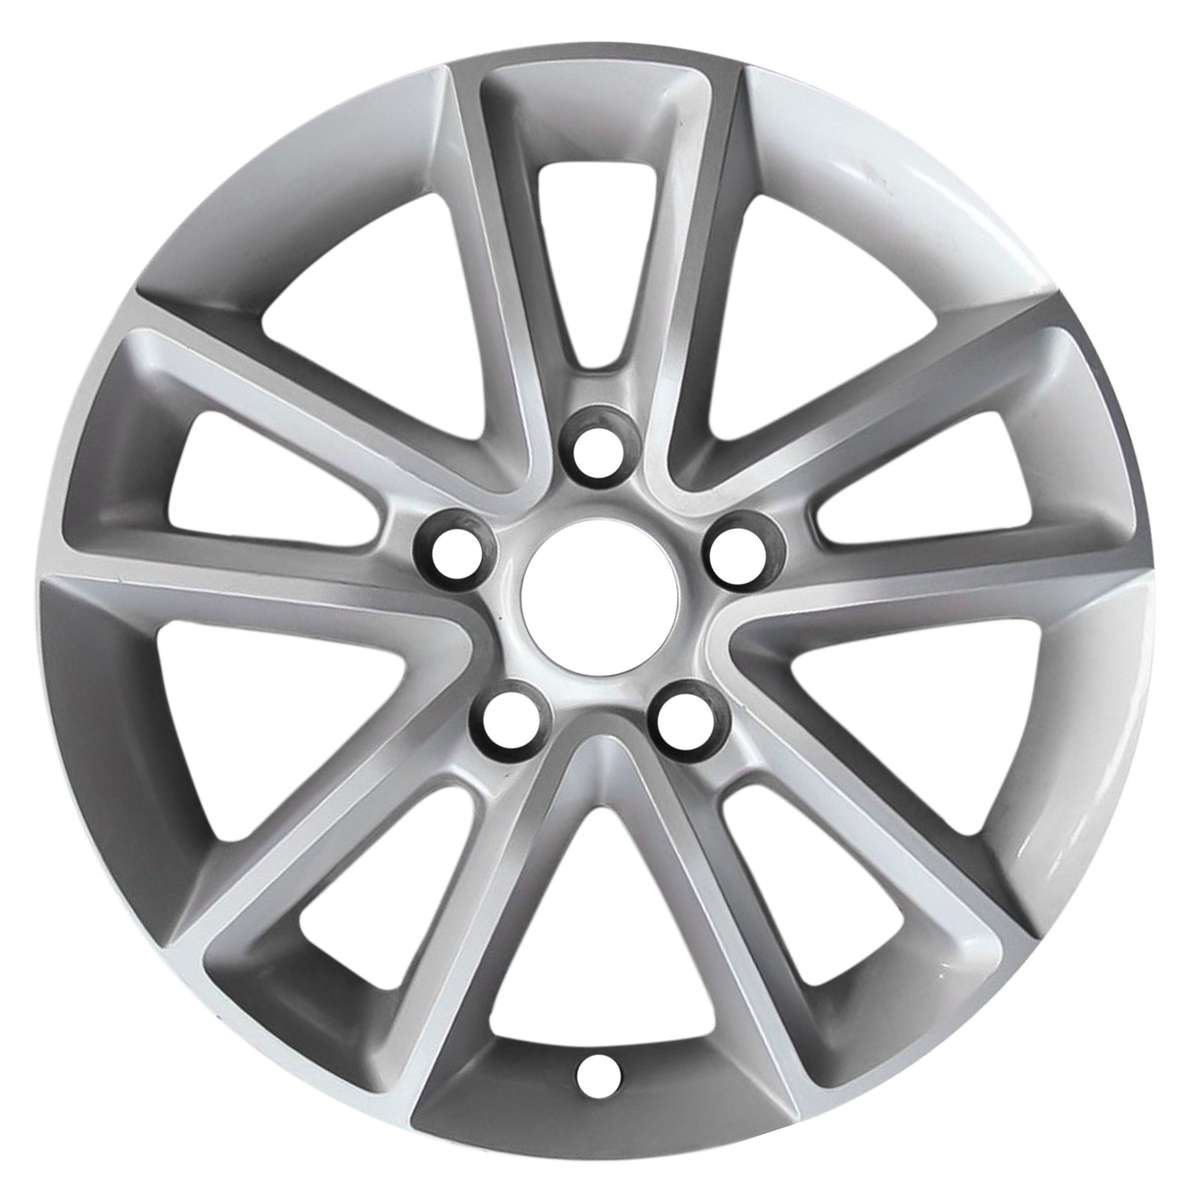 2016 Dodge Journey New 17" Replacement Wheel Rim RW2399S